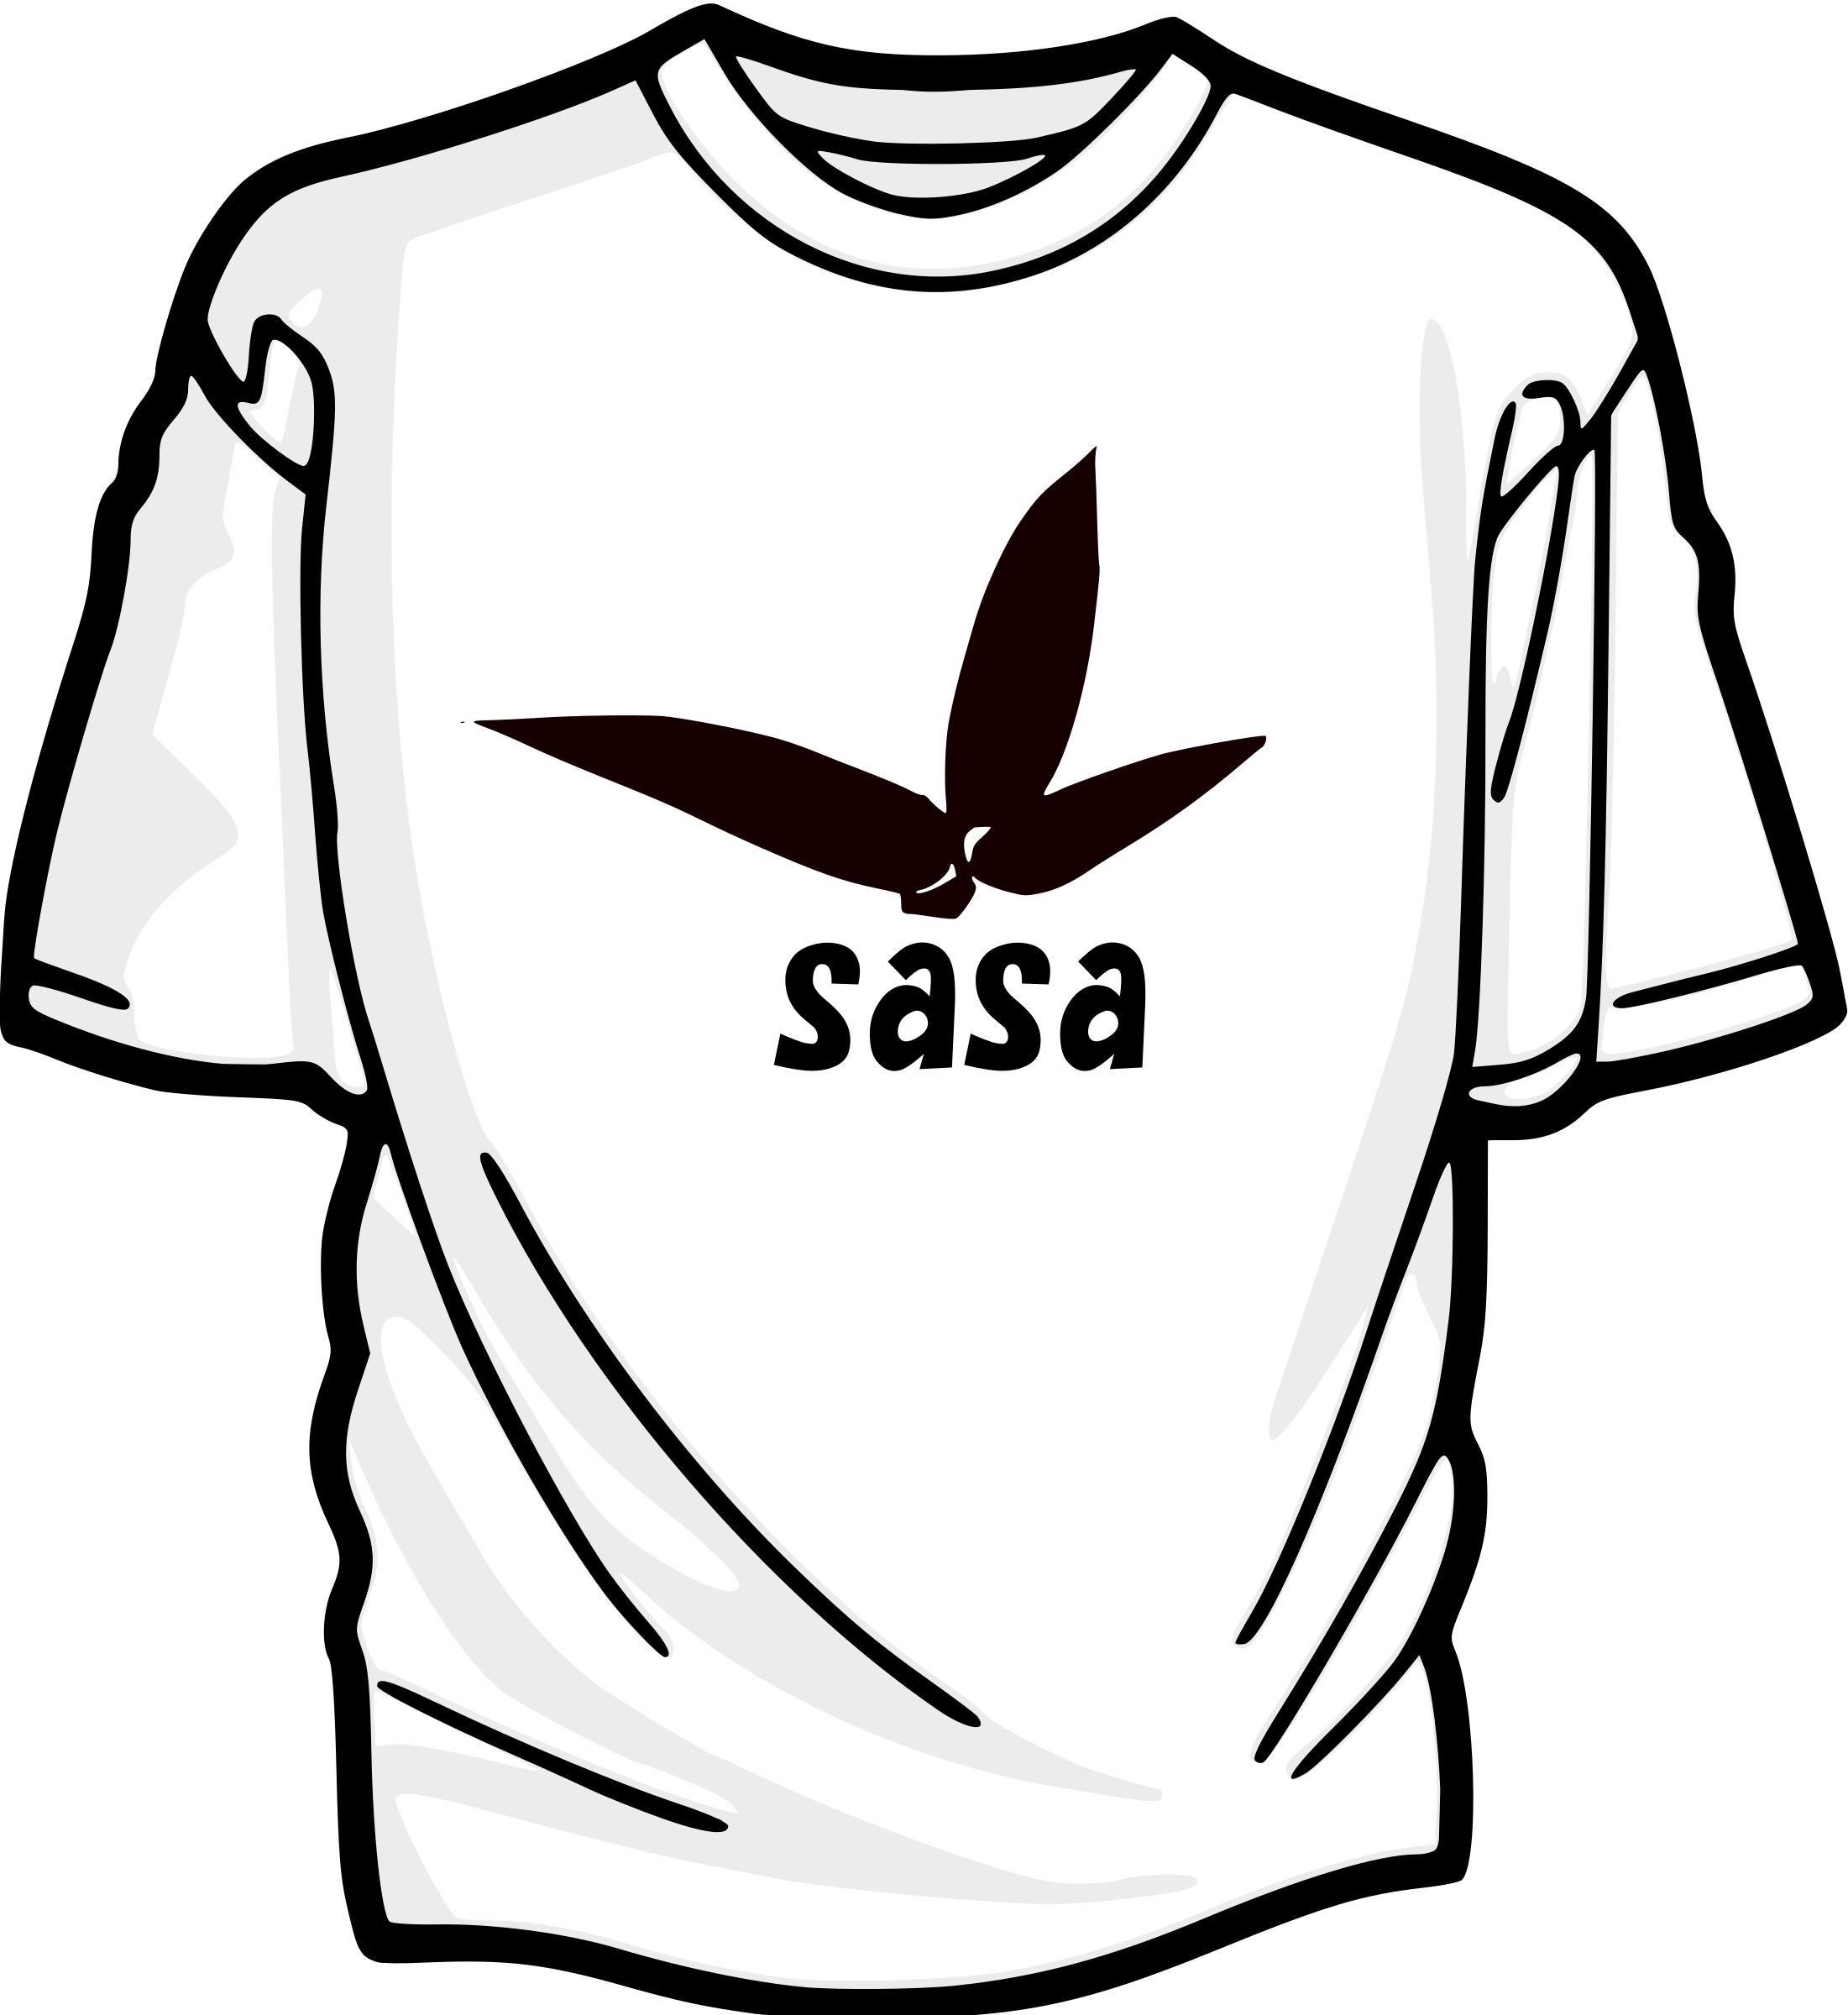 Sasa Logo - Tshirt with sasa logo Icons PNG - Free PNG and Icons Downloads